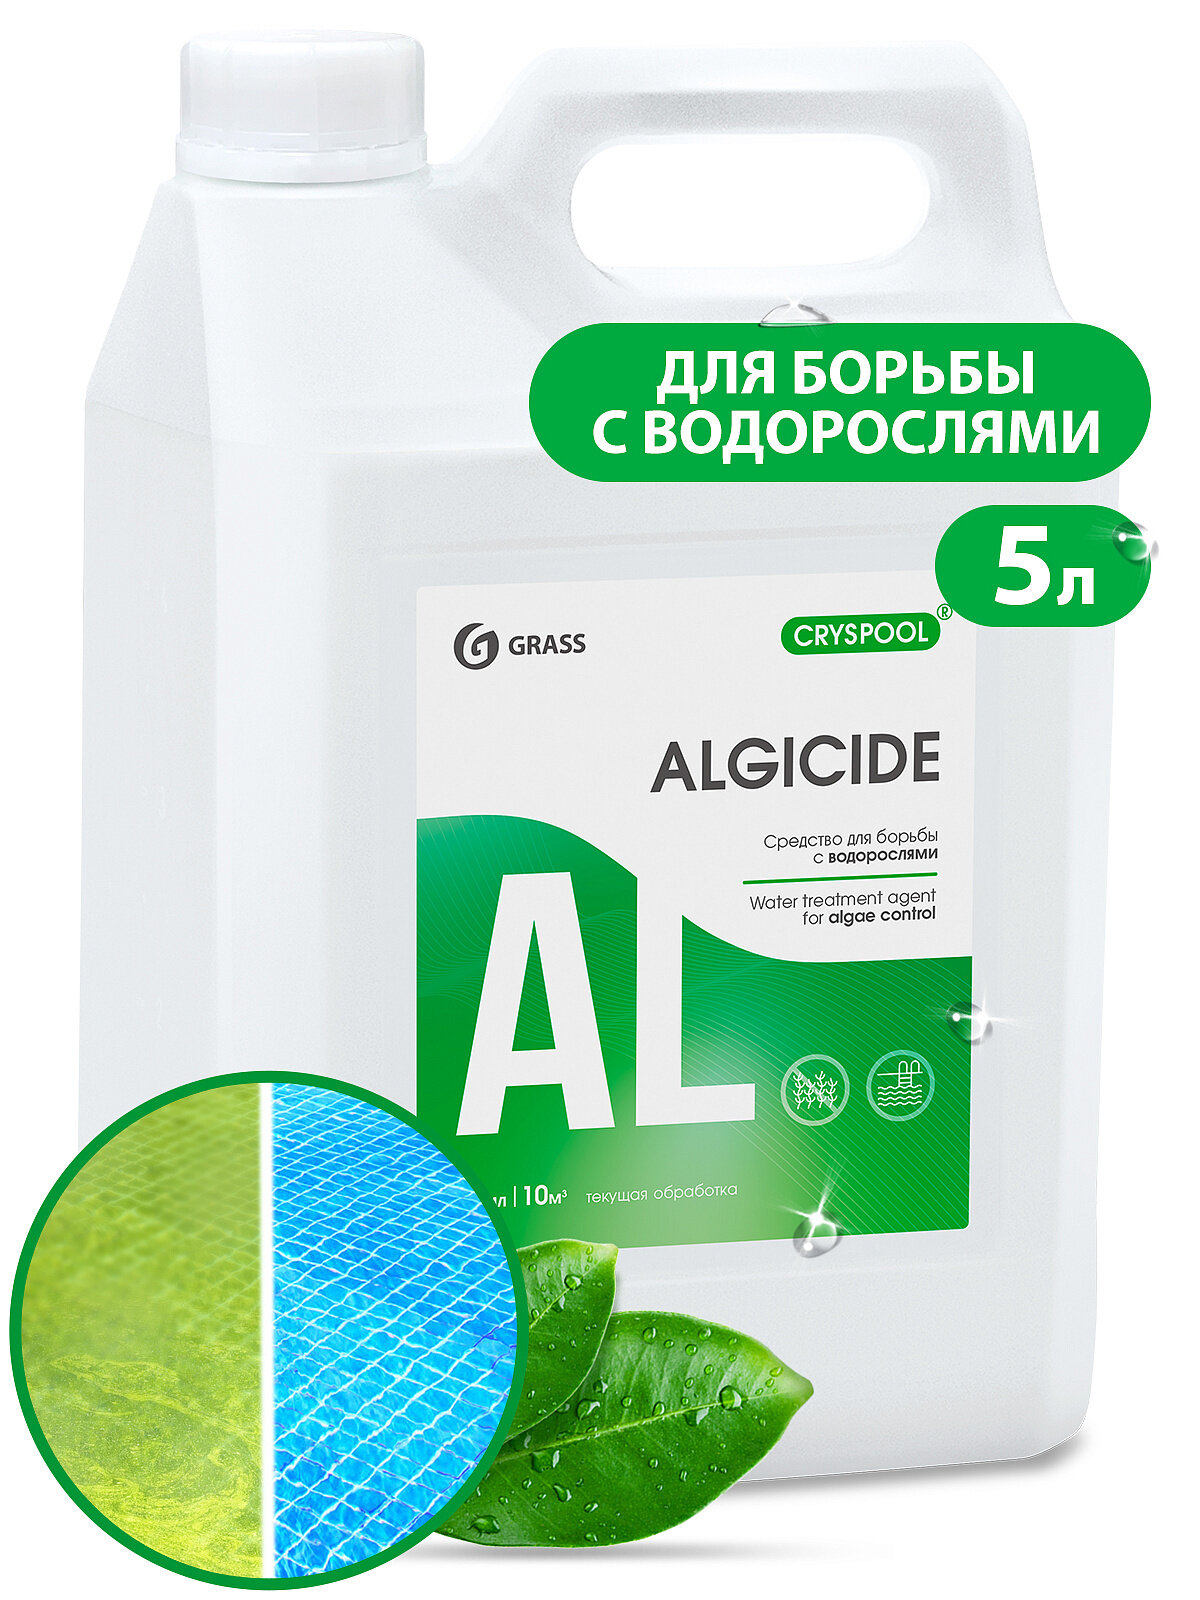 GraSS Альгицид средство для уничтожения водорослей в бассейне химия CRYSPOOL 5л осветление воды